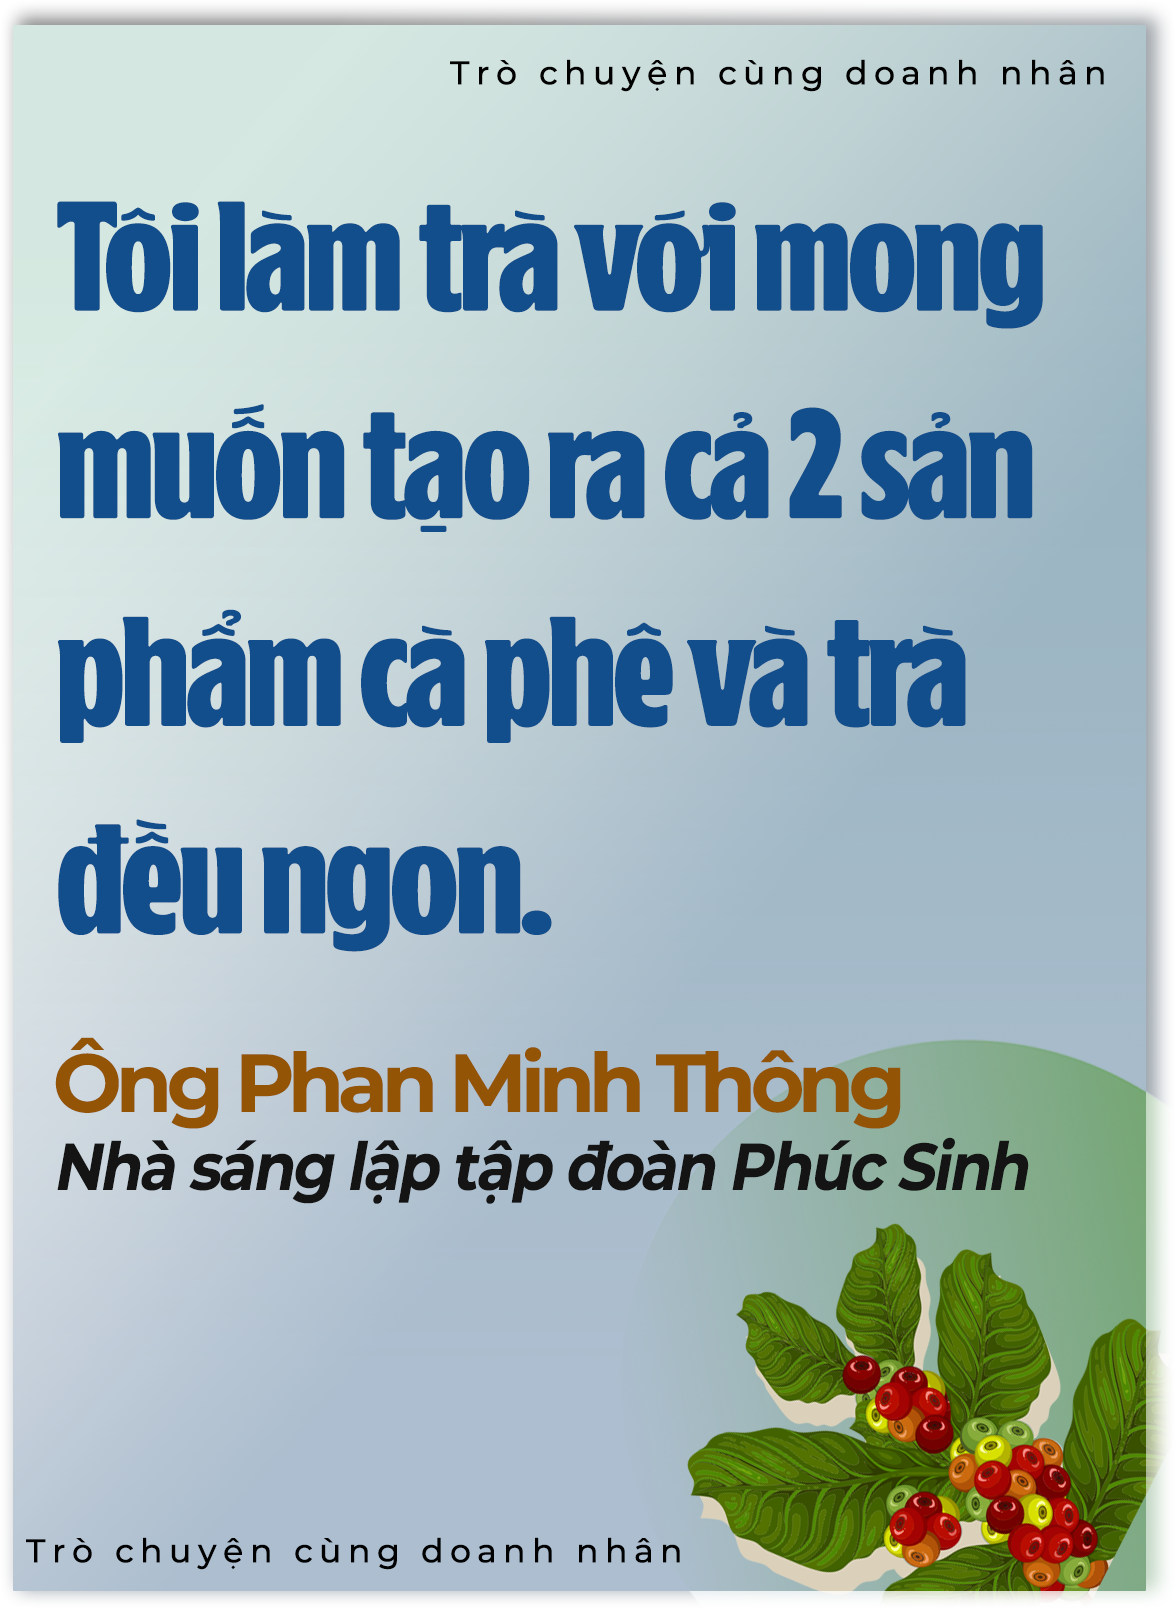 'Vua tiêu' Phan Minh Thông: Tôi nhìn thấy vàng ròng từ nông nghiệp - Ảnh 4.